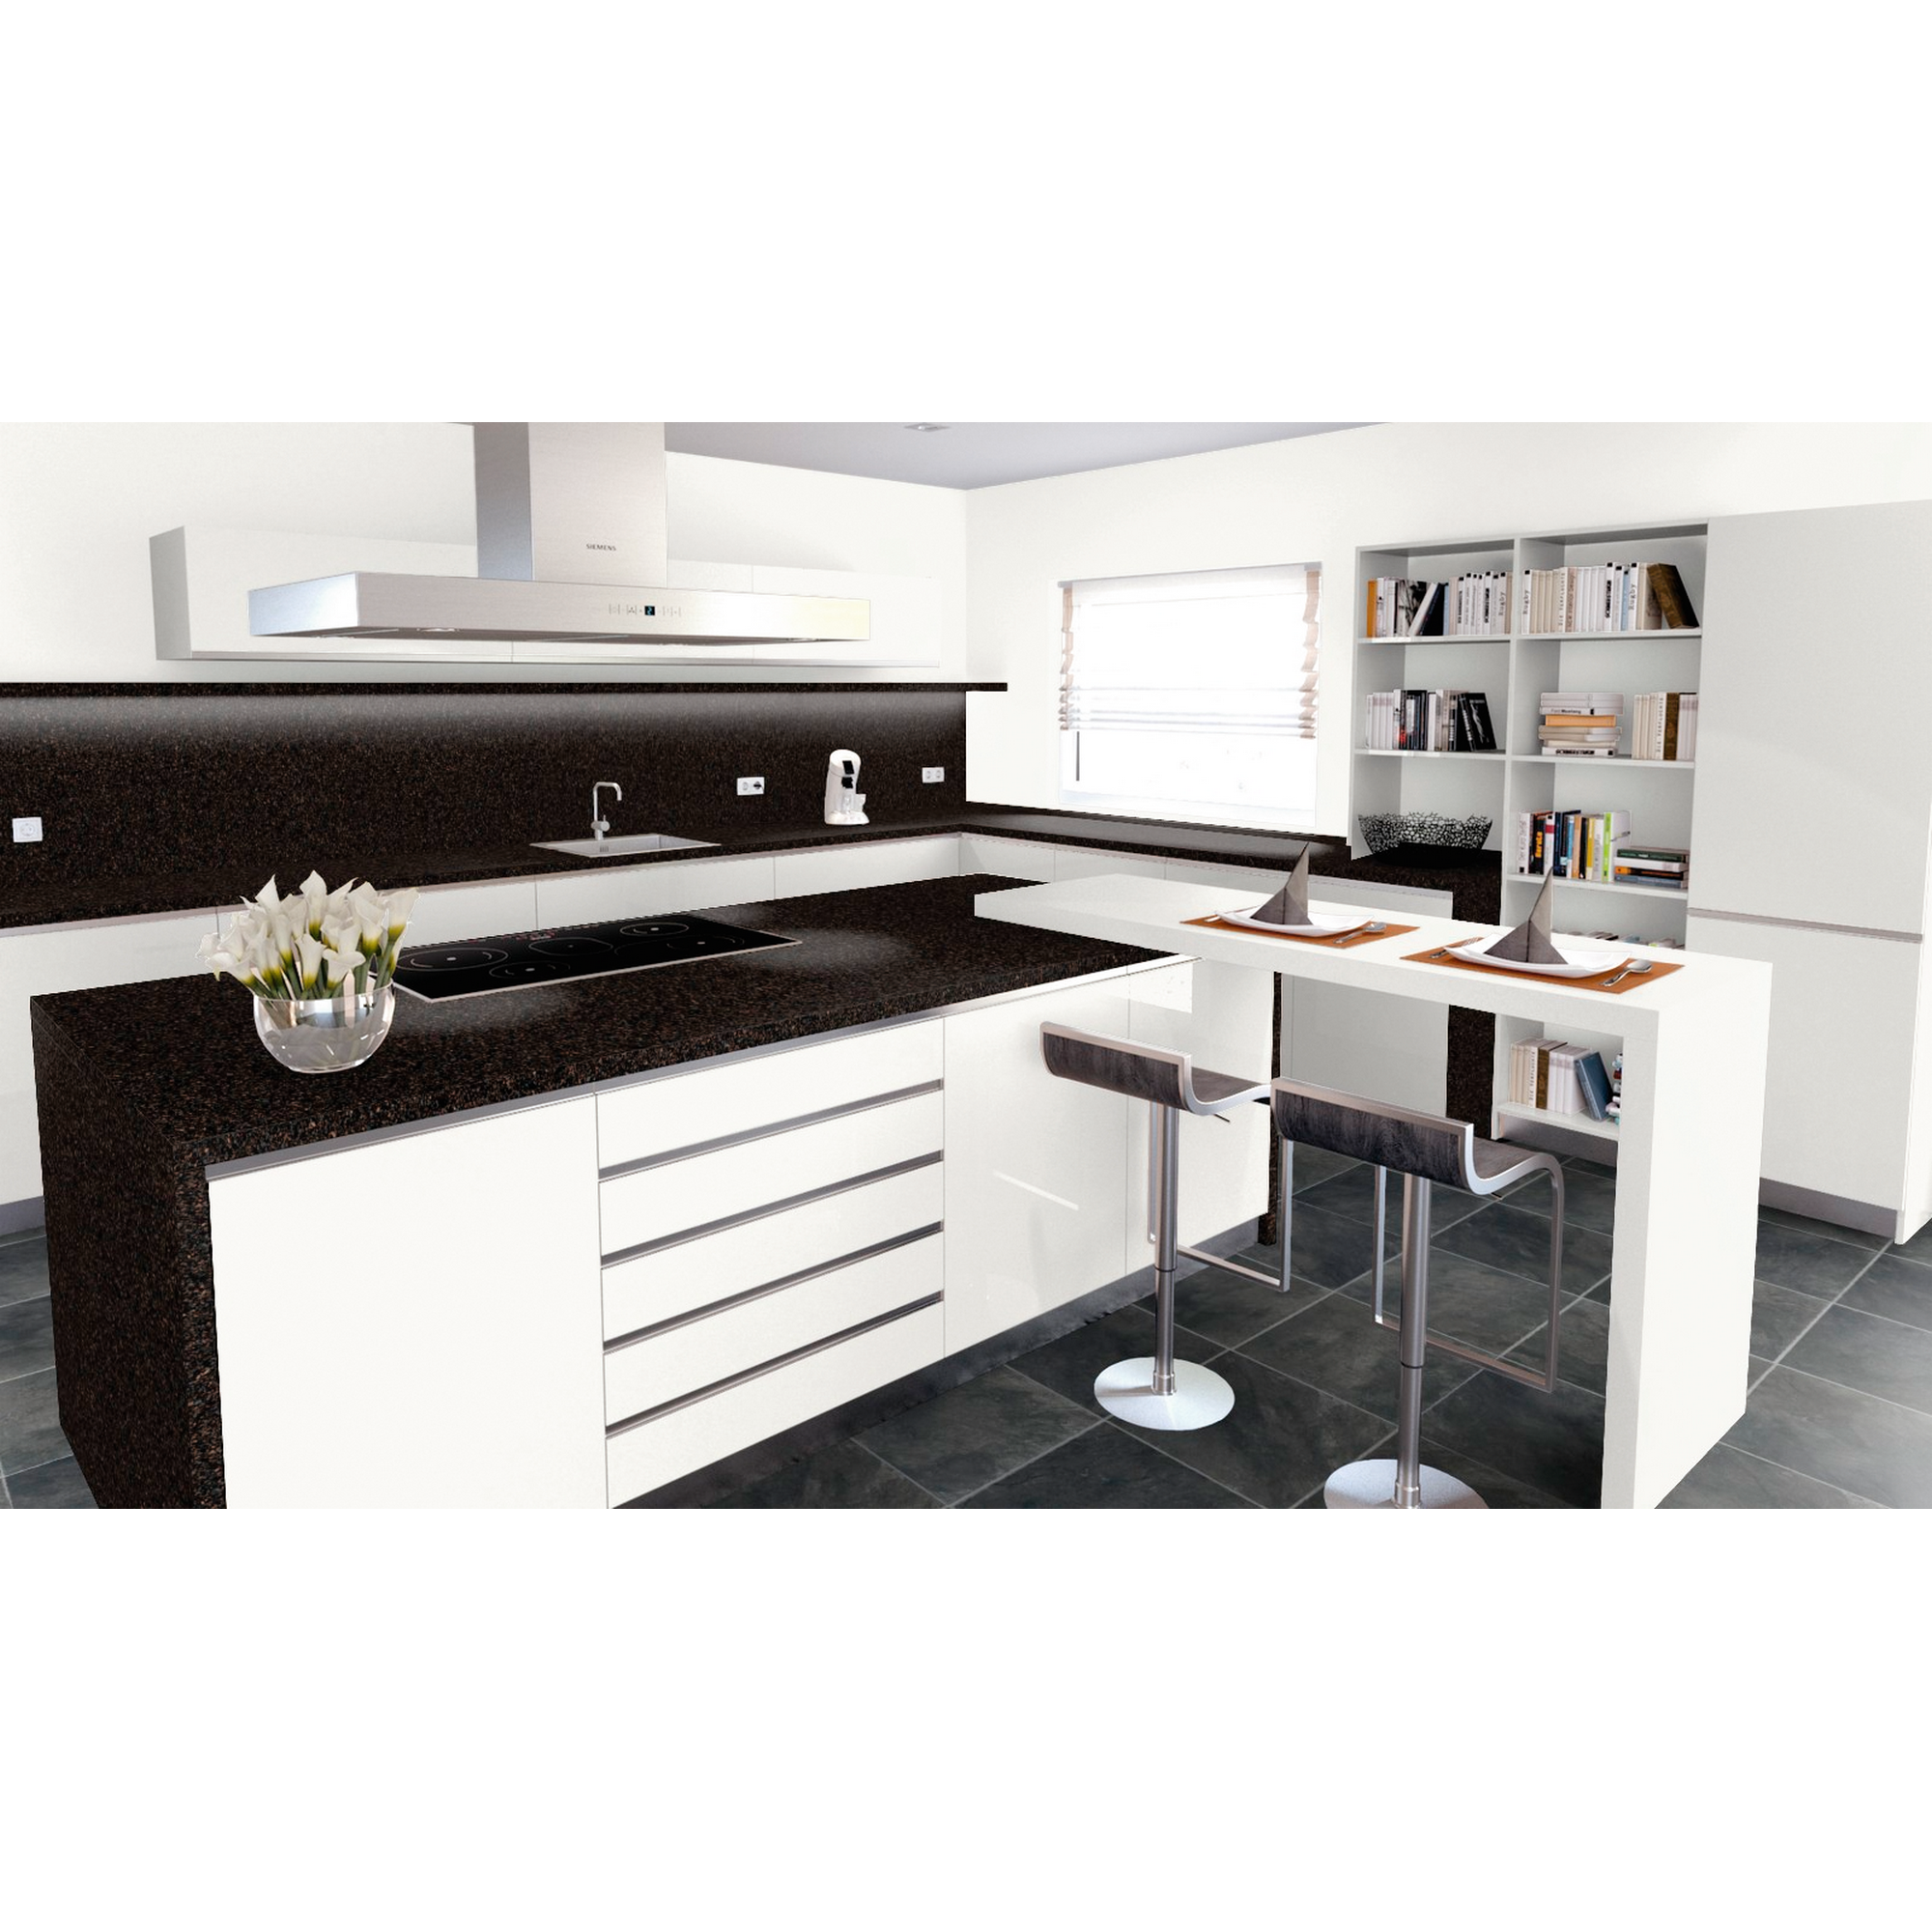 Küchenarbeitsplatte 'MK194 BRIL' 4100 x 600 x 39 mm terrazzo adige + product picture